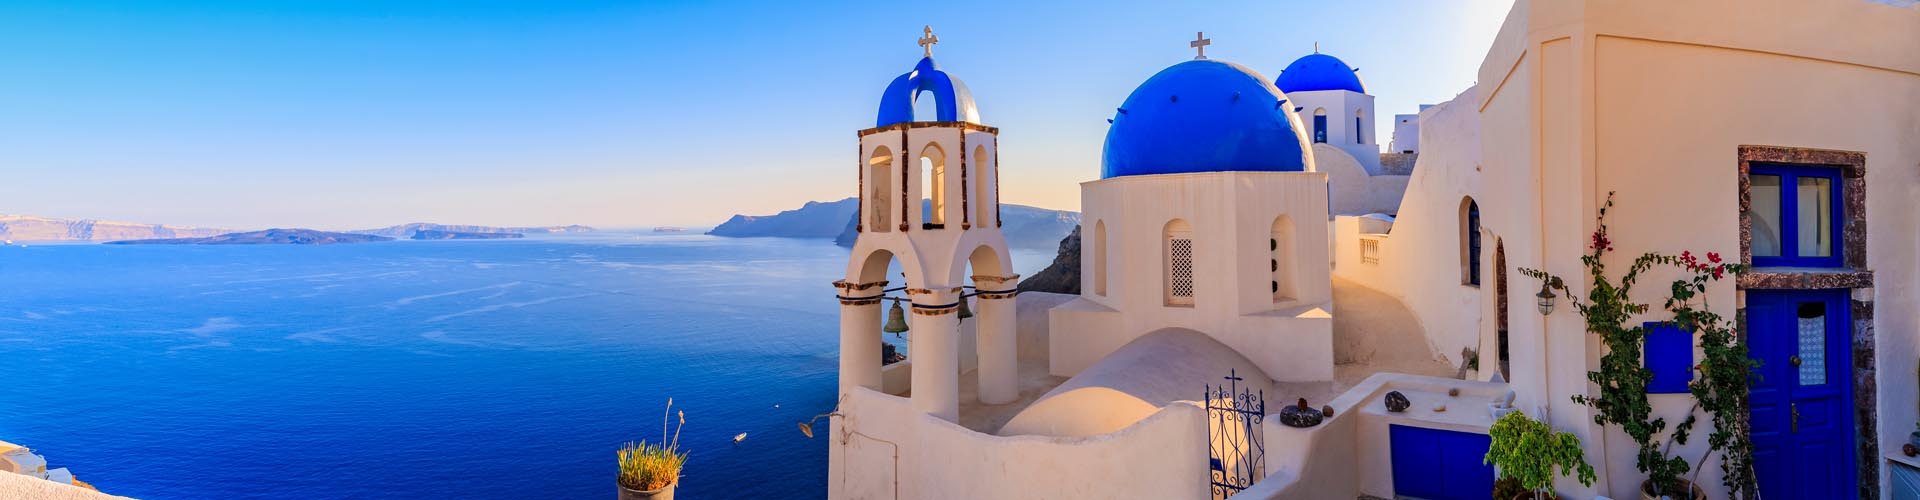 Türkisblaues Meer, weiße Häuser mit blauen Kuppeln - Urlaub in Griechenland, gut versichert mit Allianz Travel Reiseversicherungen!